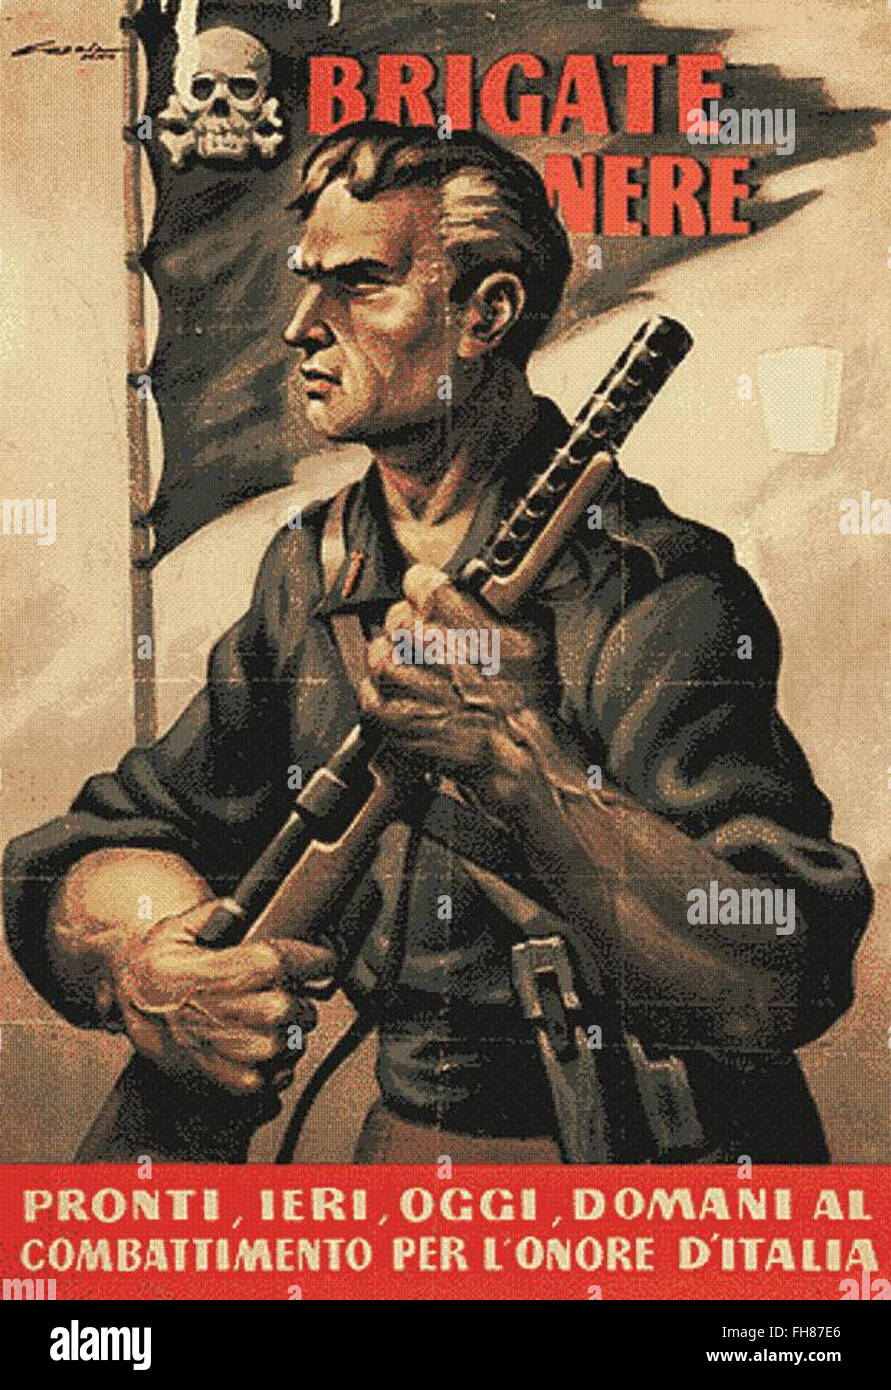 Brigate Nere - Affiches de propagande italienne fasciste - WWII Banque D'Images